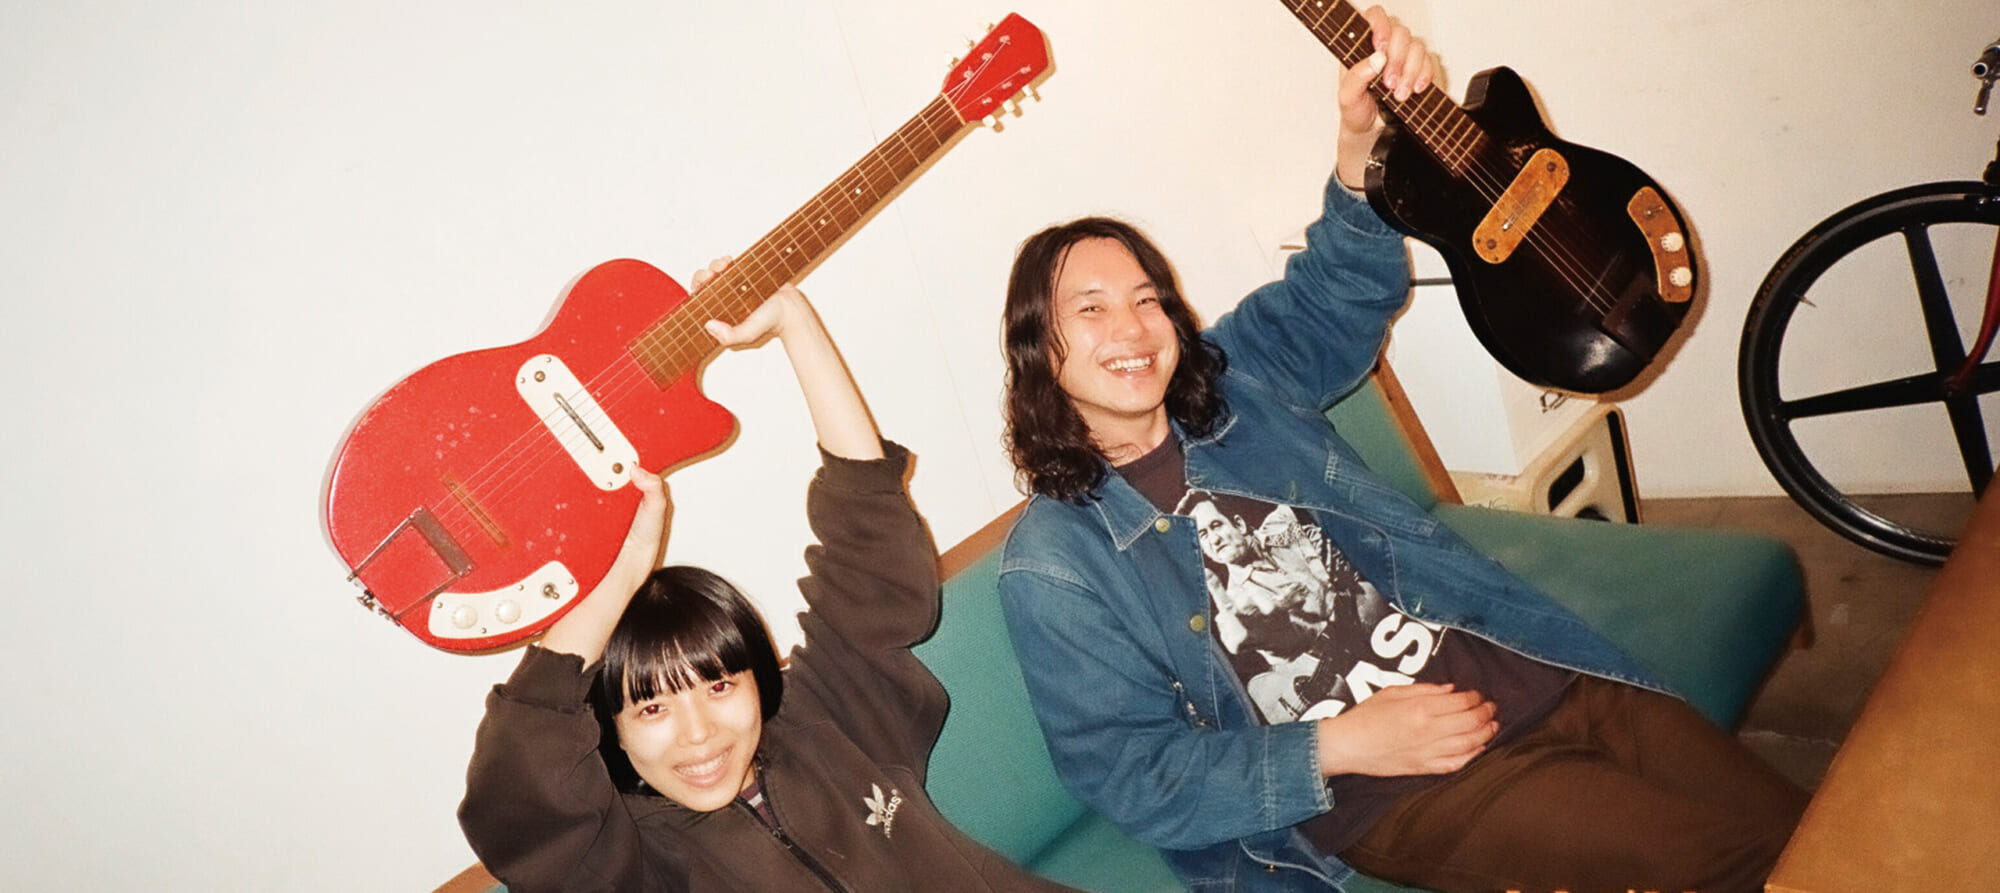 Interview｜カネコアヤノ×林宏敏『よすが』に滲む、儚いギターについて。